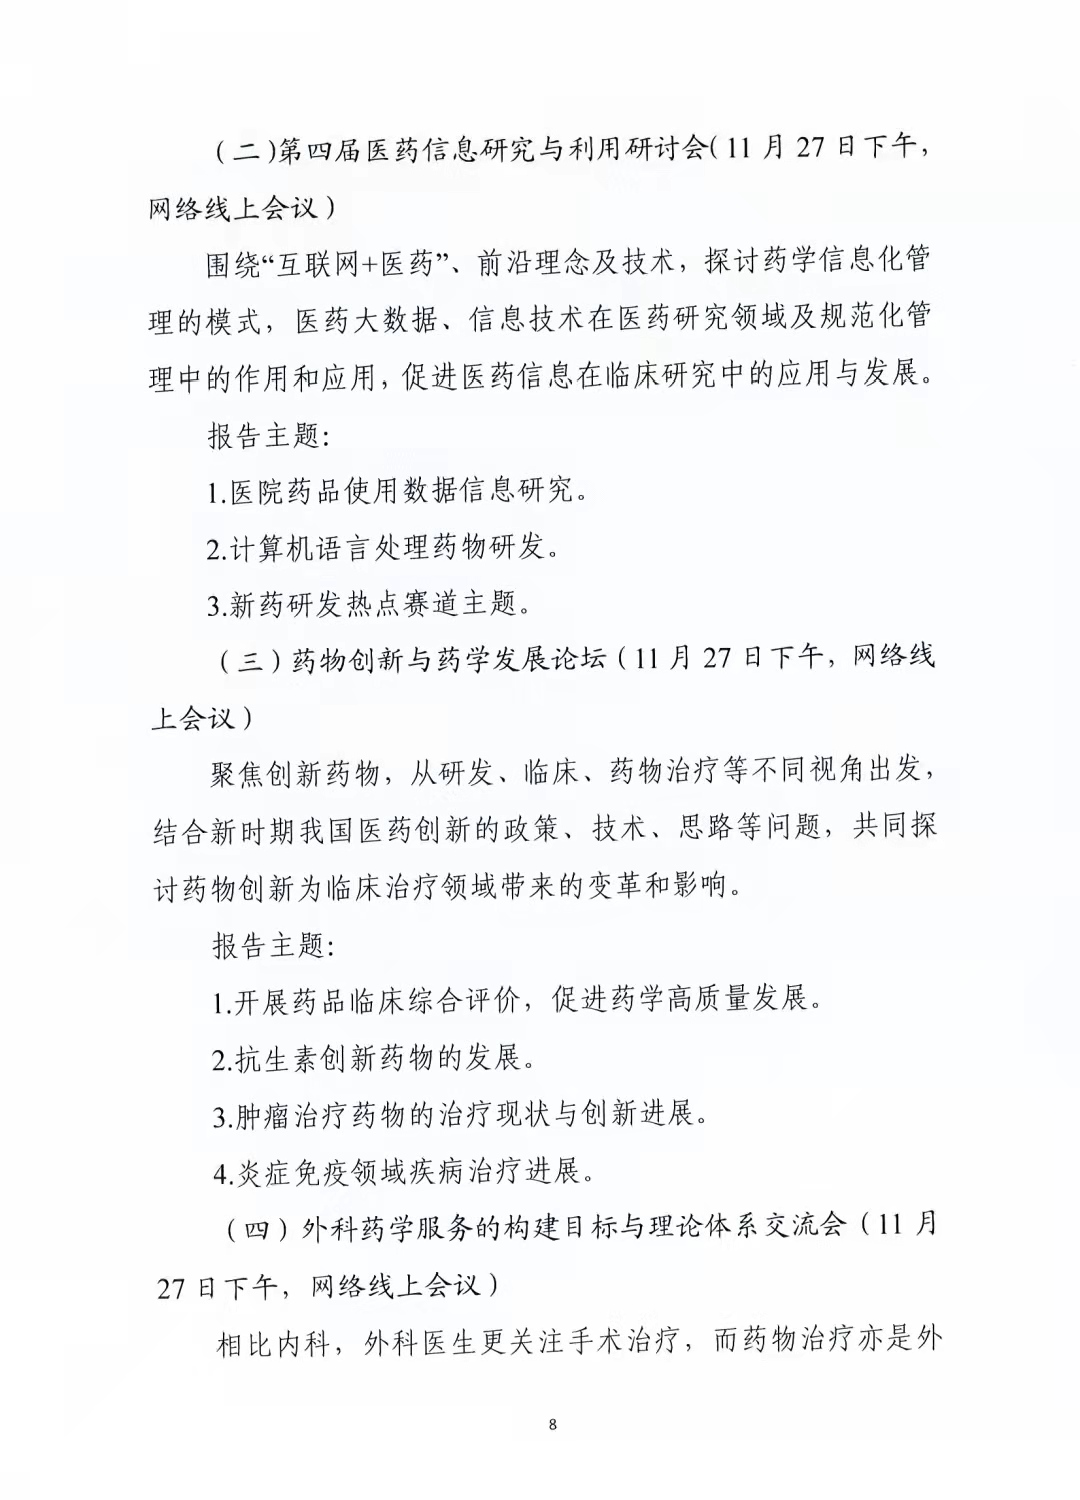 关于举办中国药学会第二十一届中国药师周的通知（第二轮）(图8)